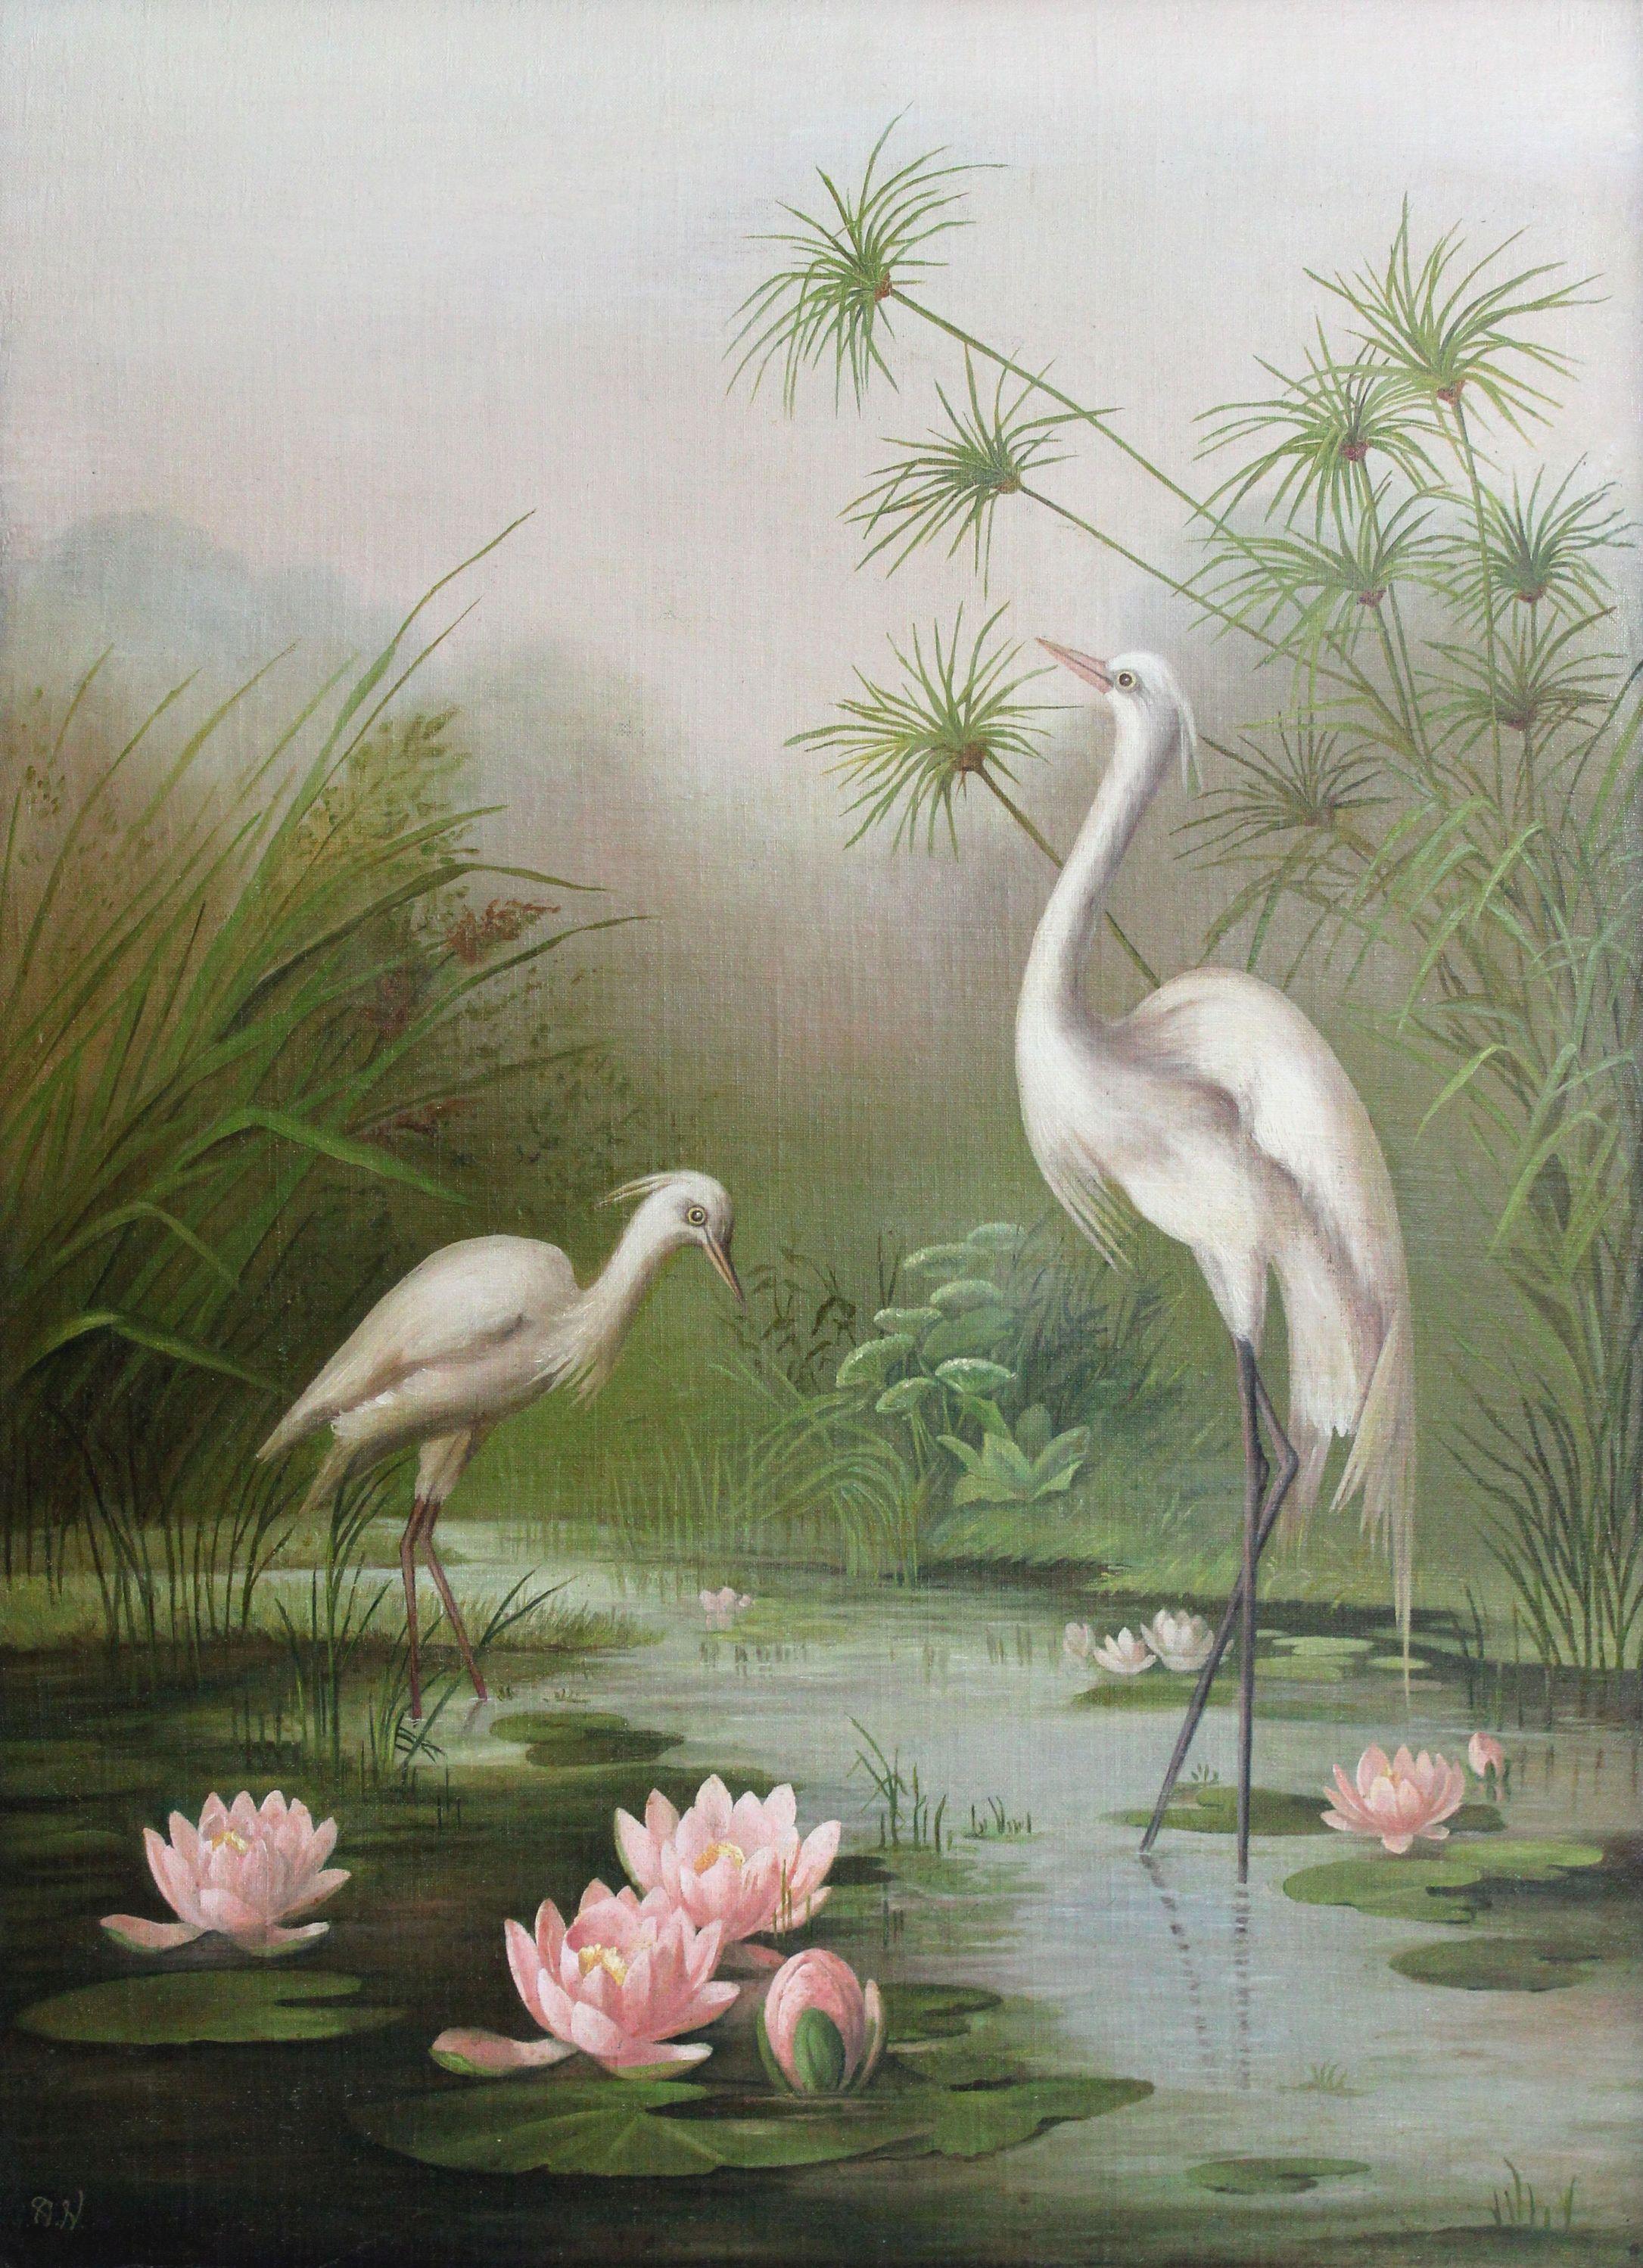 Landscape Painting Unknown - Cranes. Début du 20e siècle, Art nouveau, carton, toile, huile, 84 x61 cm